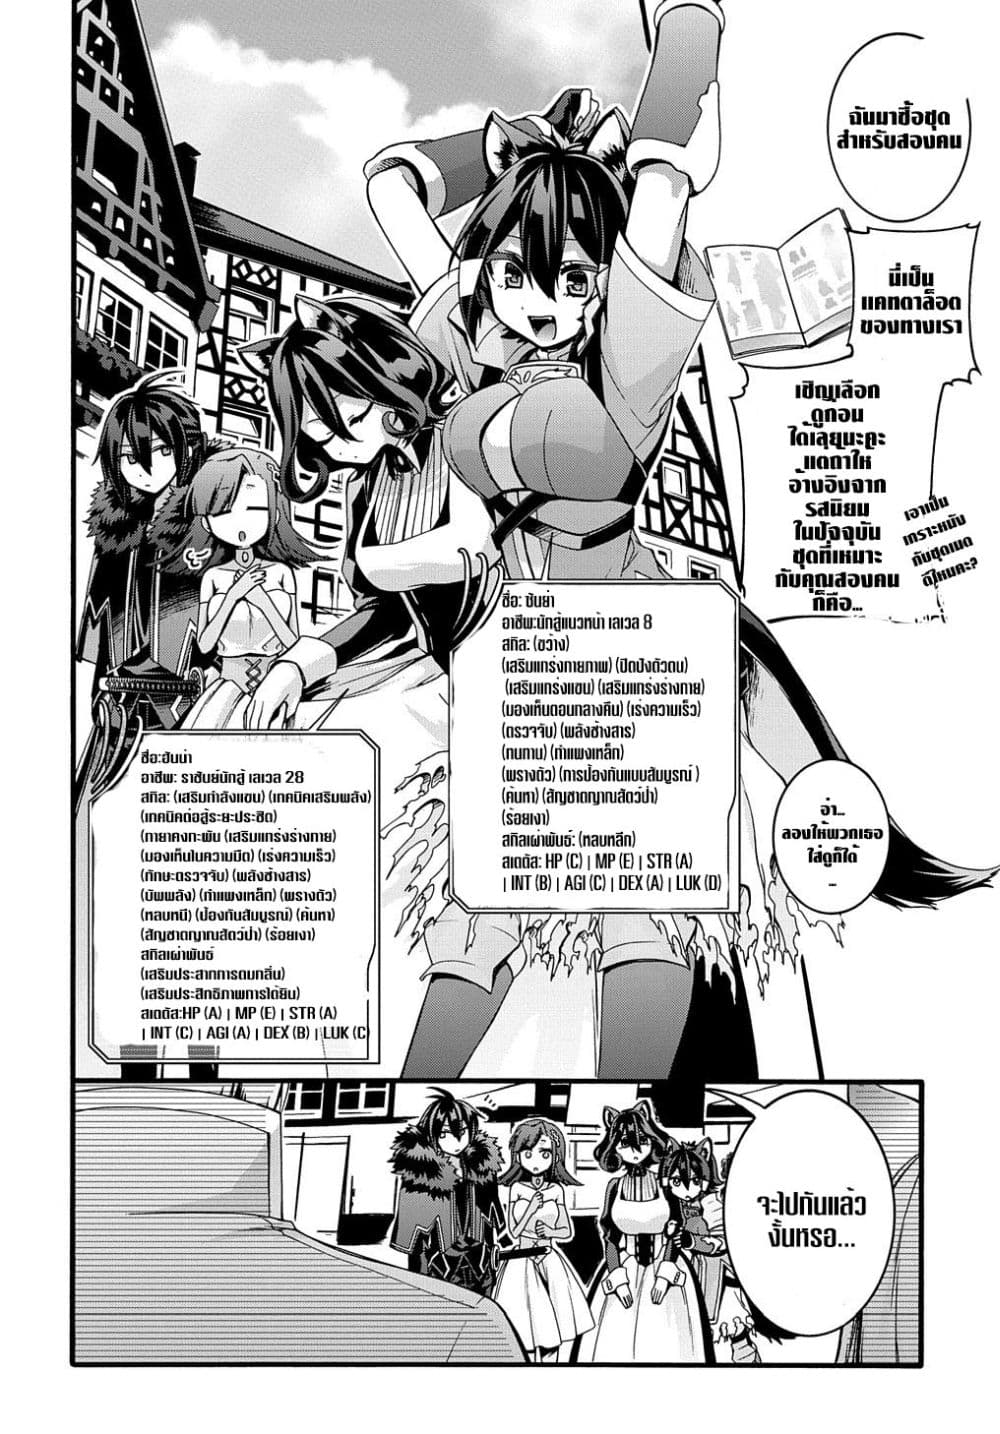 Garbage Brave: Isekai ni Shoukan Sare Suterareta Yuusha no Fukushuu Monogatari 20-20